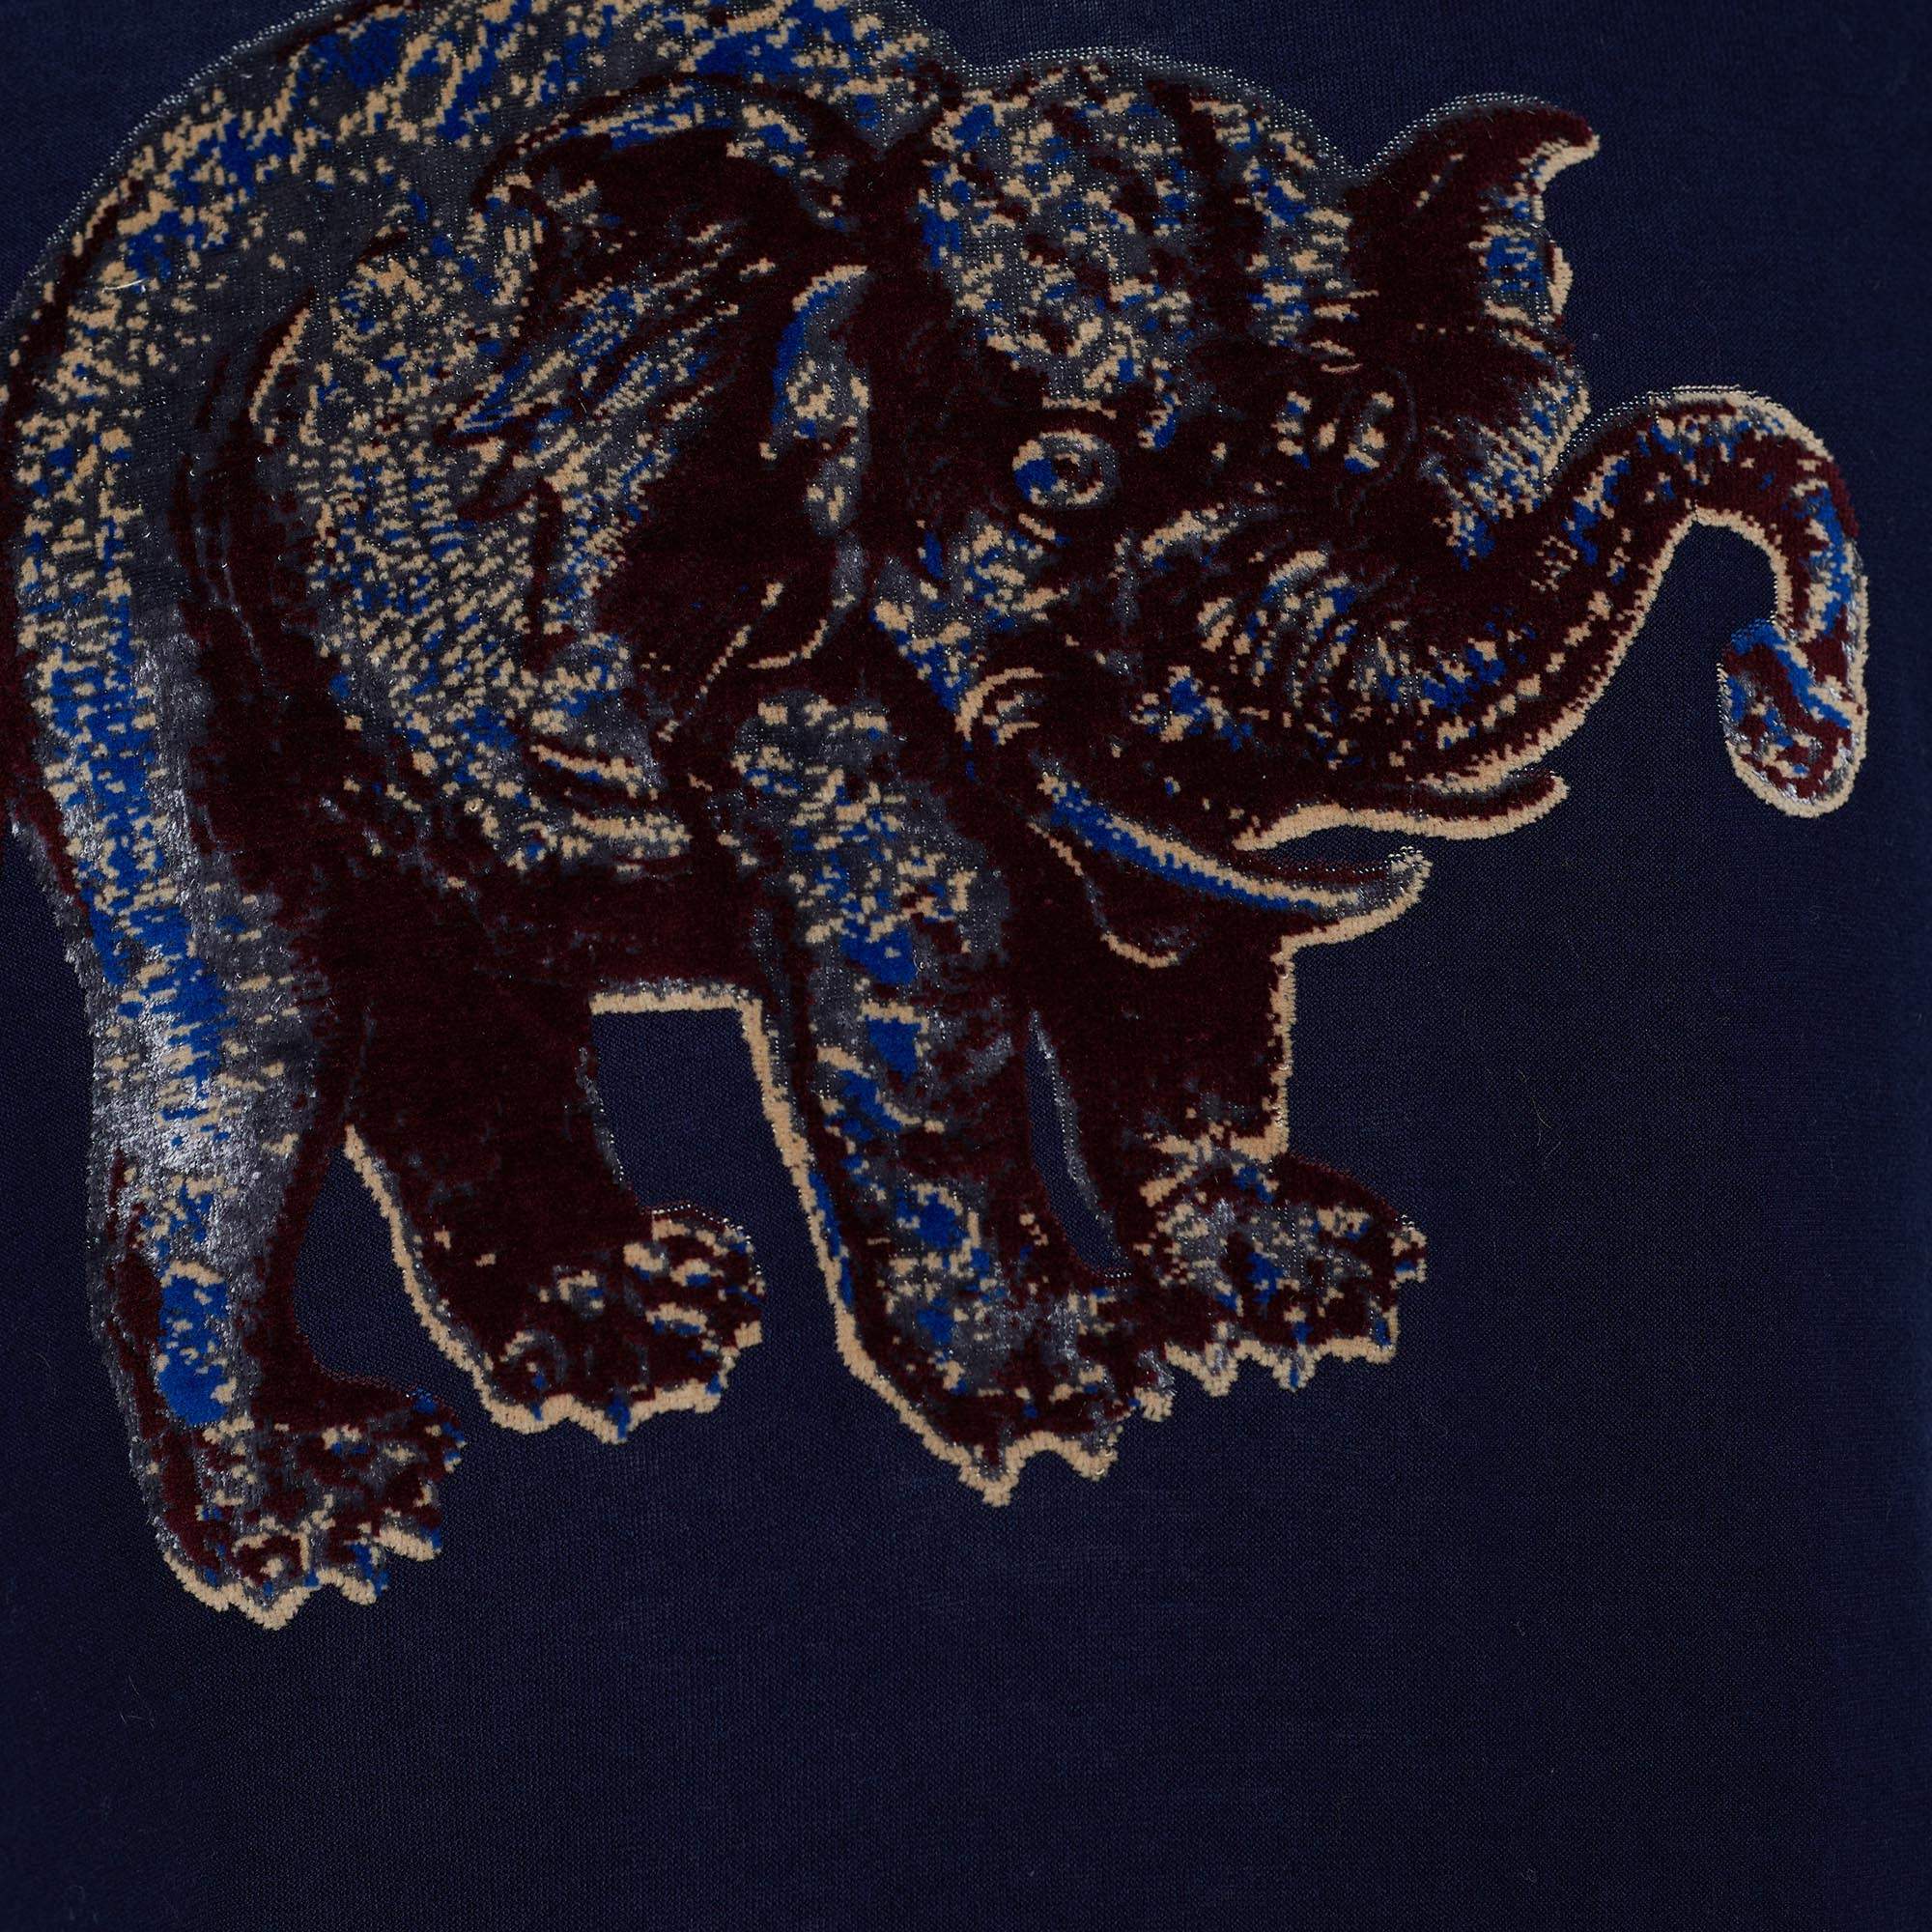 Louis Vuitton x Chapman Brothers Blue Jersey Elephant Applique T-Shirt L Louis  Vuitton